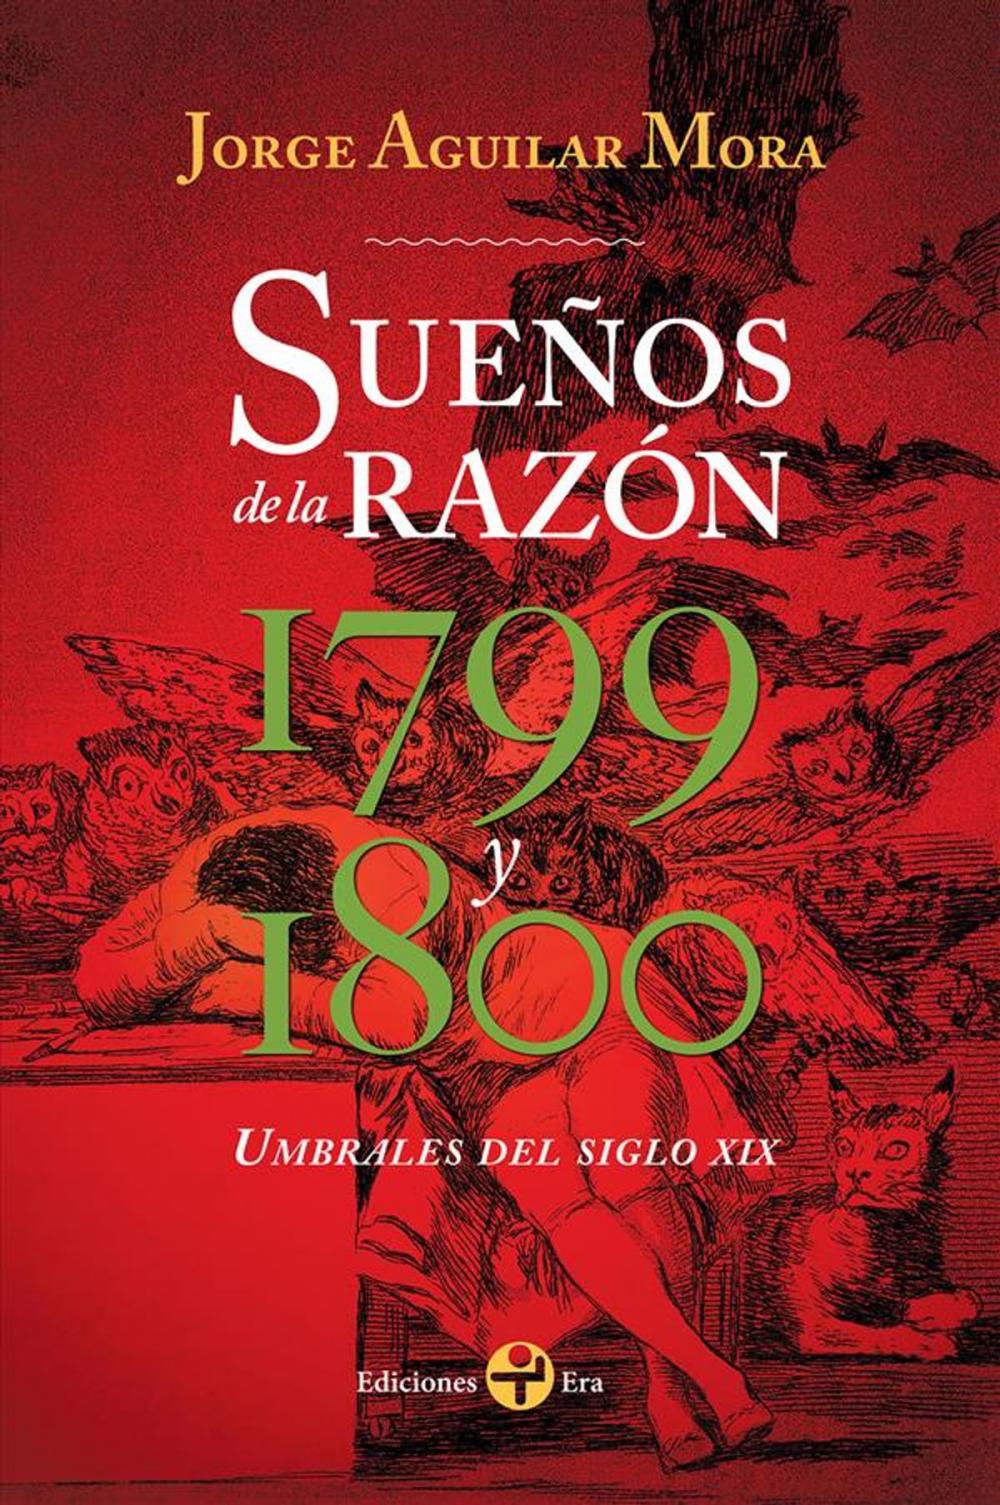 Big bigCover of Sueños de la razón 1799 y 1800